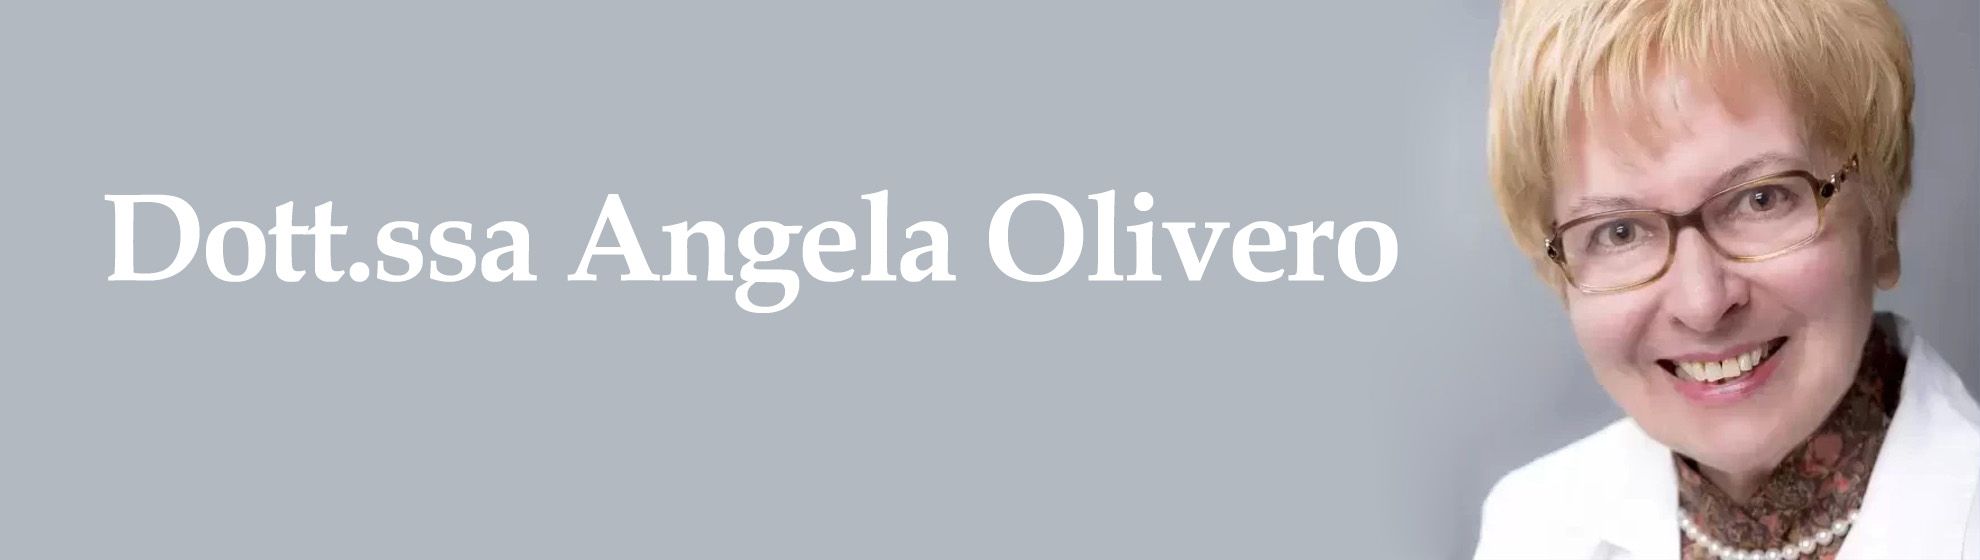 Dott.ssa Angela Olivero